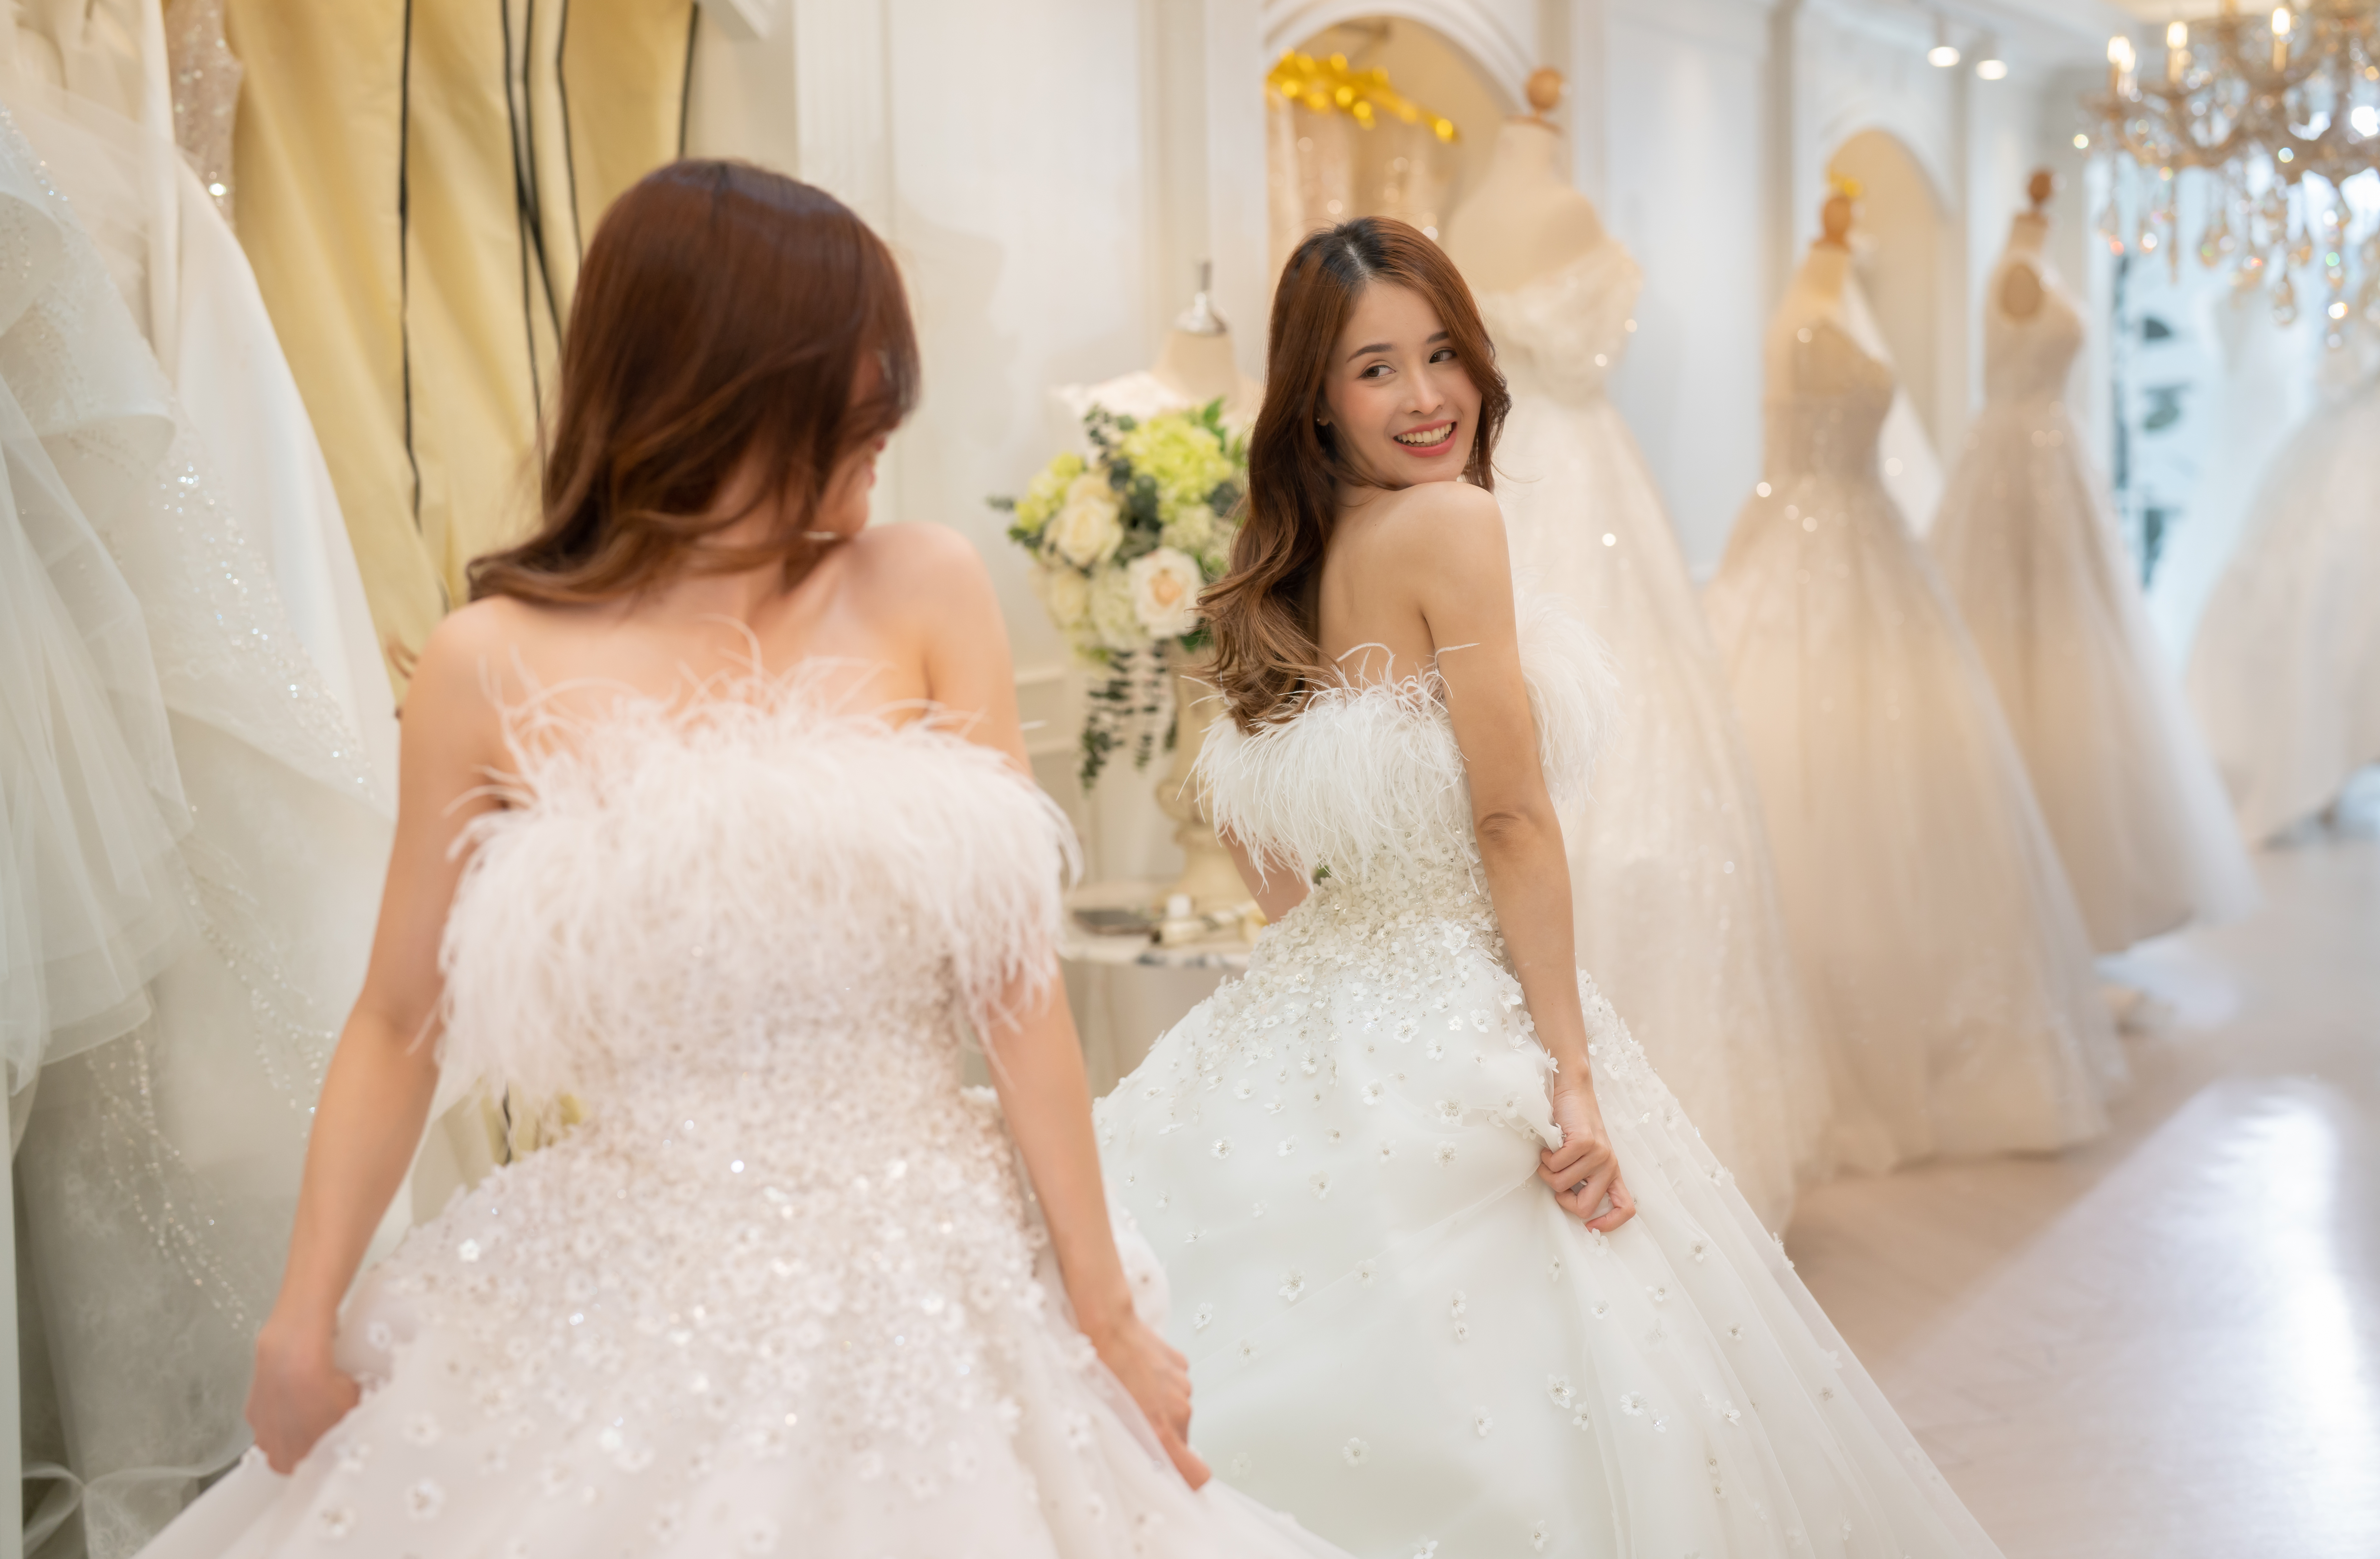 El sastre diseña el vestido de novia para la novia | Foto: Getty Images